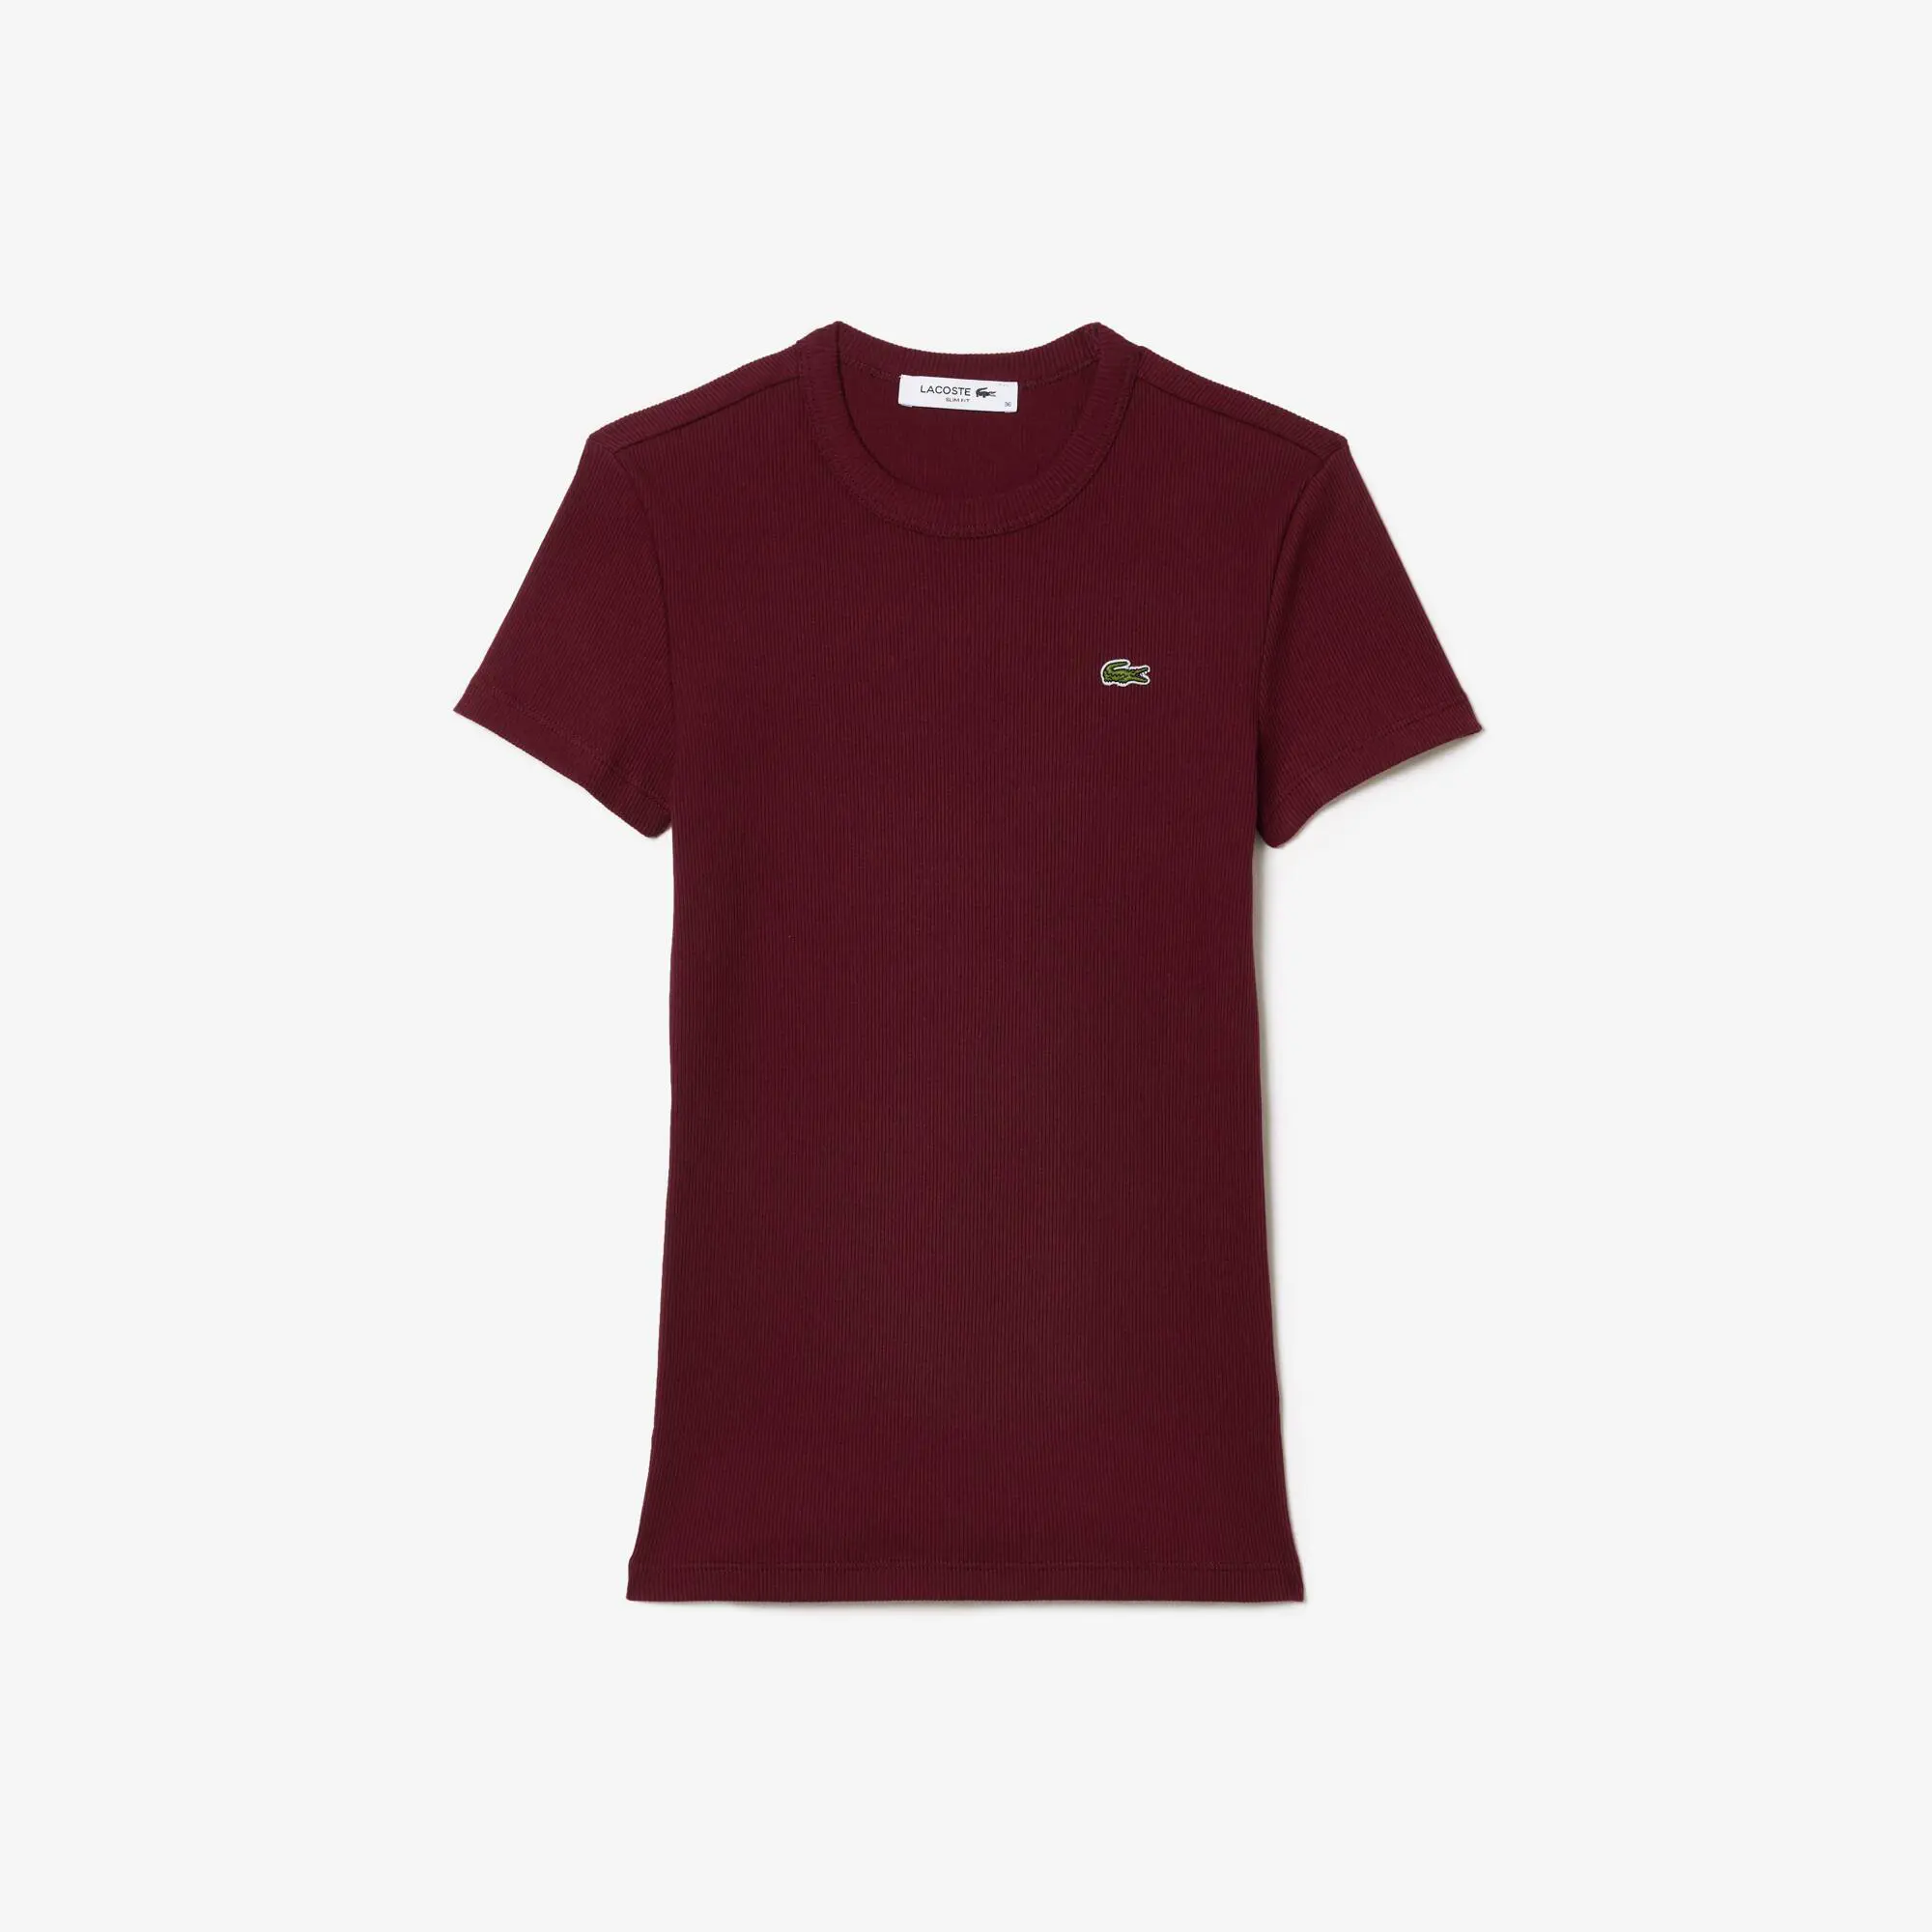 Lacoste Women’s Slim Fit Organic Cotton T-shirt. 2